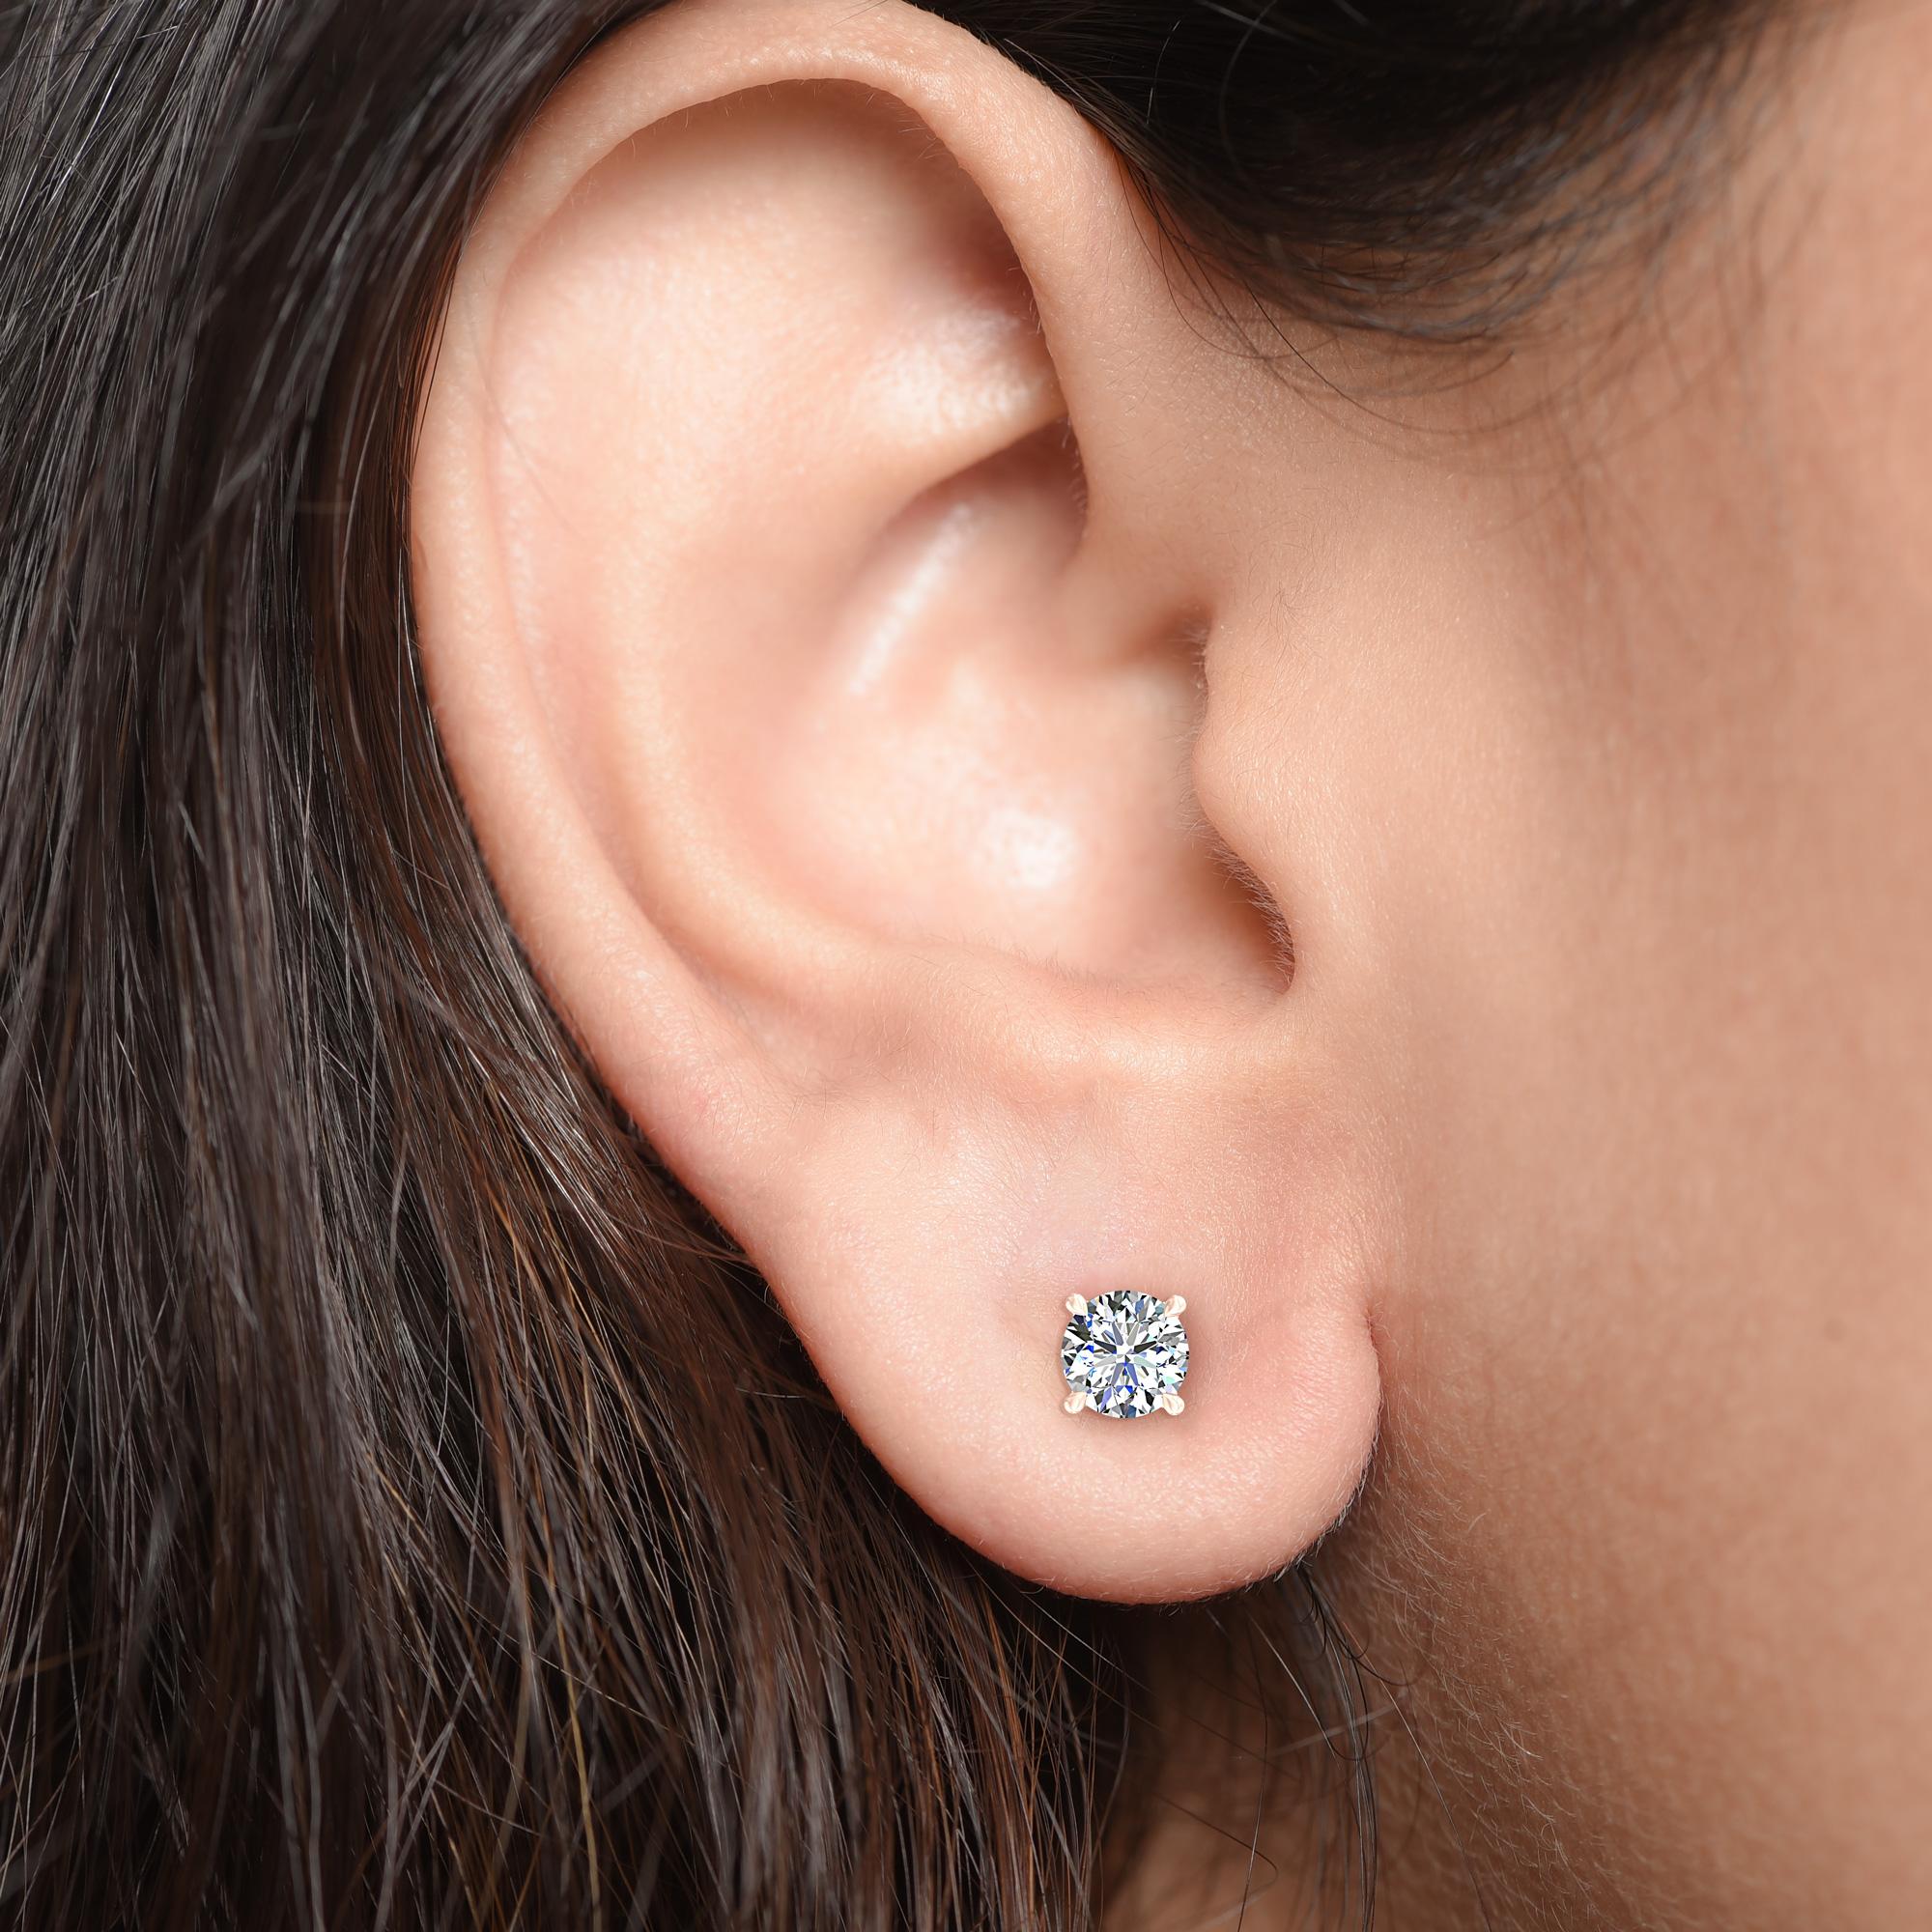 Diese klassischen GIA-zertifizierten Diamantohrstecker präsentieren ein Paar perfekt aufeinander abgestimmter Diamanten mit einem Gesamtgewicht von 0,75 Karat. Die aus 18-karätigem Roségold gefertigten vierzackigen Ohrringe sind auch in Gelb- und